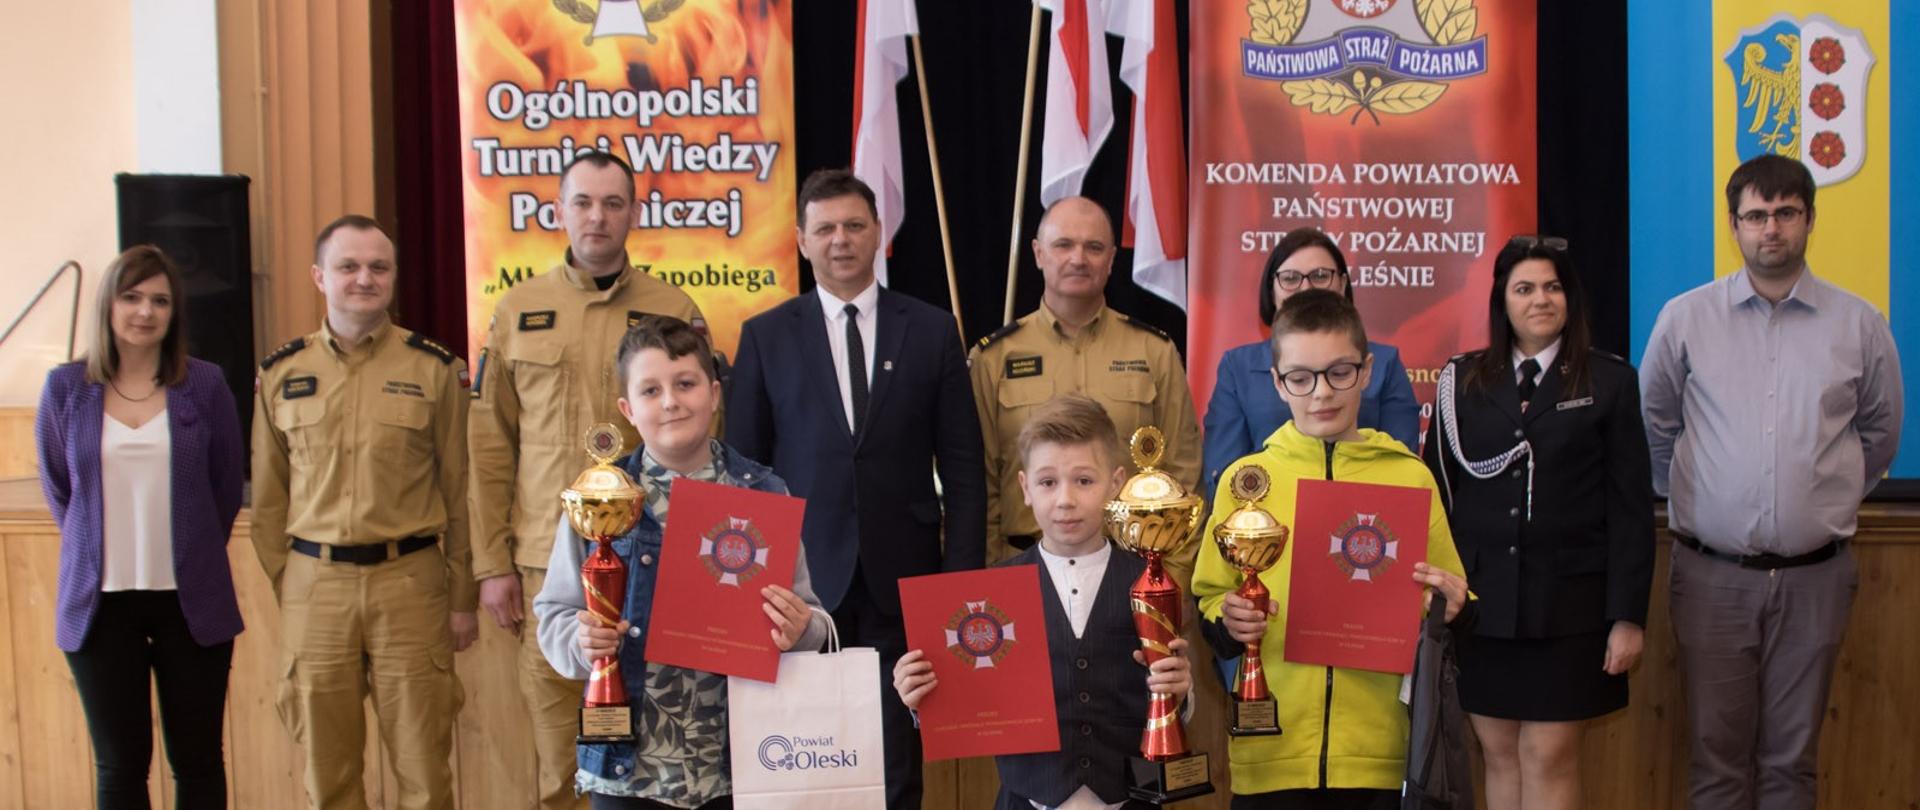 Na zdjęciu strażacy, osoby cywilne o dzieci z pucharami i dyplomami podczas Ogólnopolskiego Turnieju Wiedzy Pożarniczej.